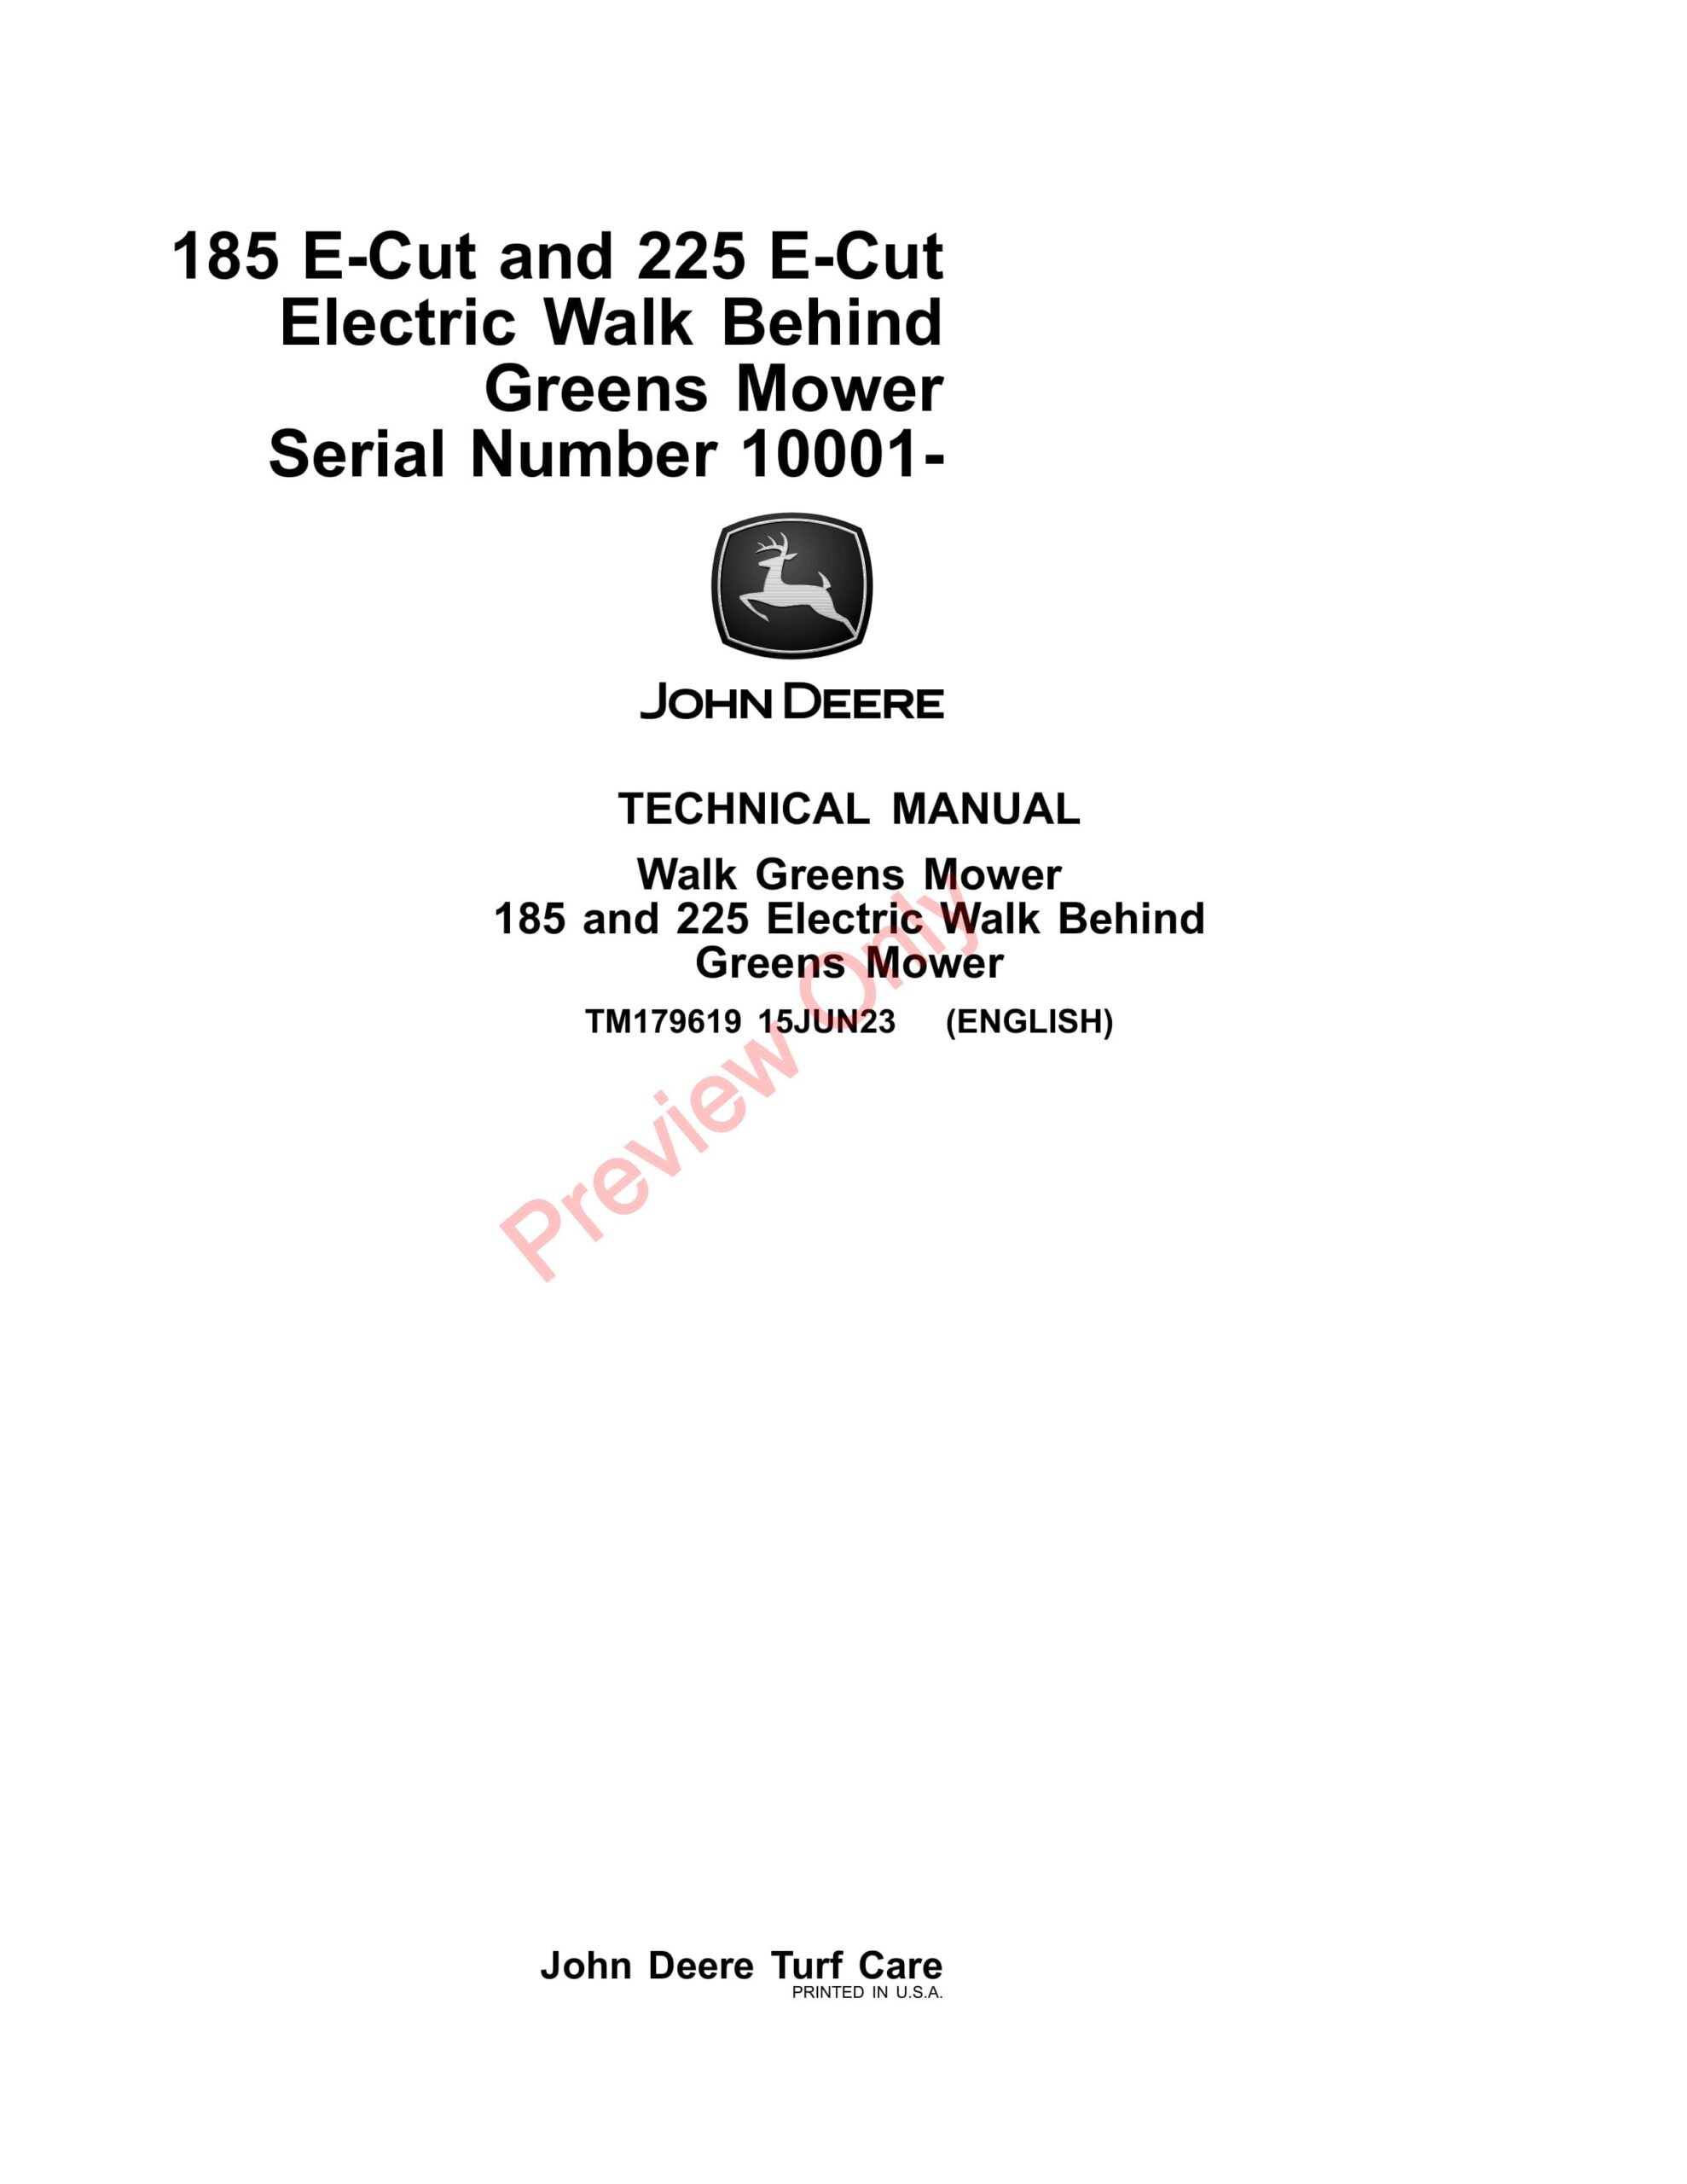 John Deere 185 E-Cut and 225 E-Cut Electric Walk Behind Greens Mower (010001 Technical Manual TM179619 15JUN23-1